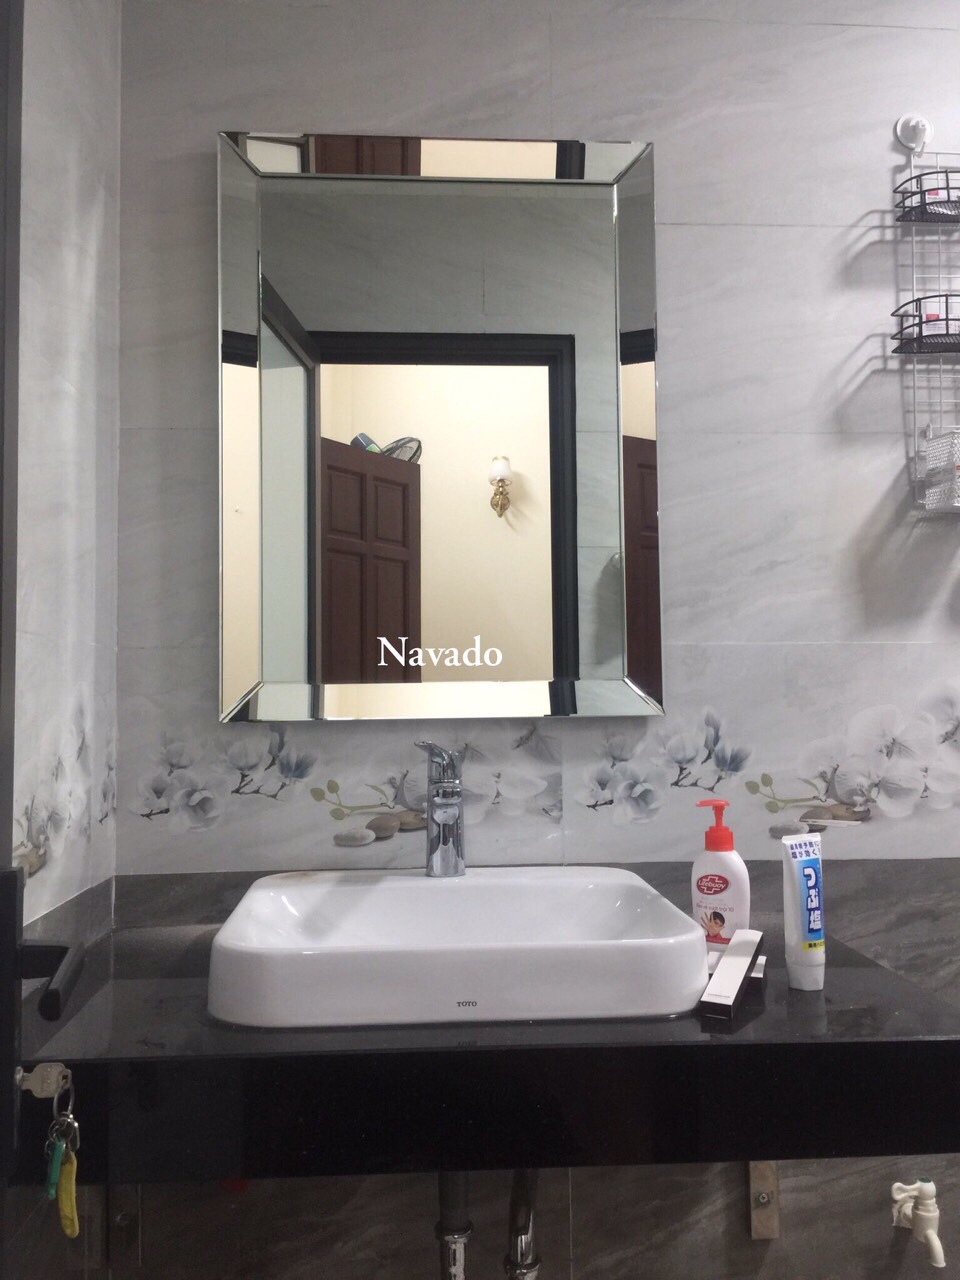 Gương phòng tắm cao cấp Branco là sự kết hợp hoàn hảo giữa kiểu dáng đẹp mắt và tính năng thông minh. Gương được thiết kế bằng chất liệu chất lượng cao cấp, giúp ngăn chặn hiện tượng sương mù phát sinh trong phòng tắm. Nhấn vào hình ảnh để biết thêm về sản phẩm này.